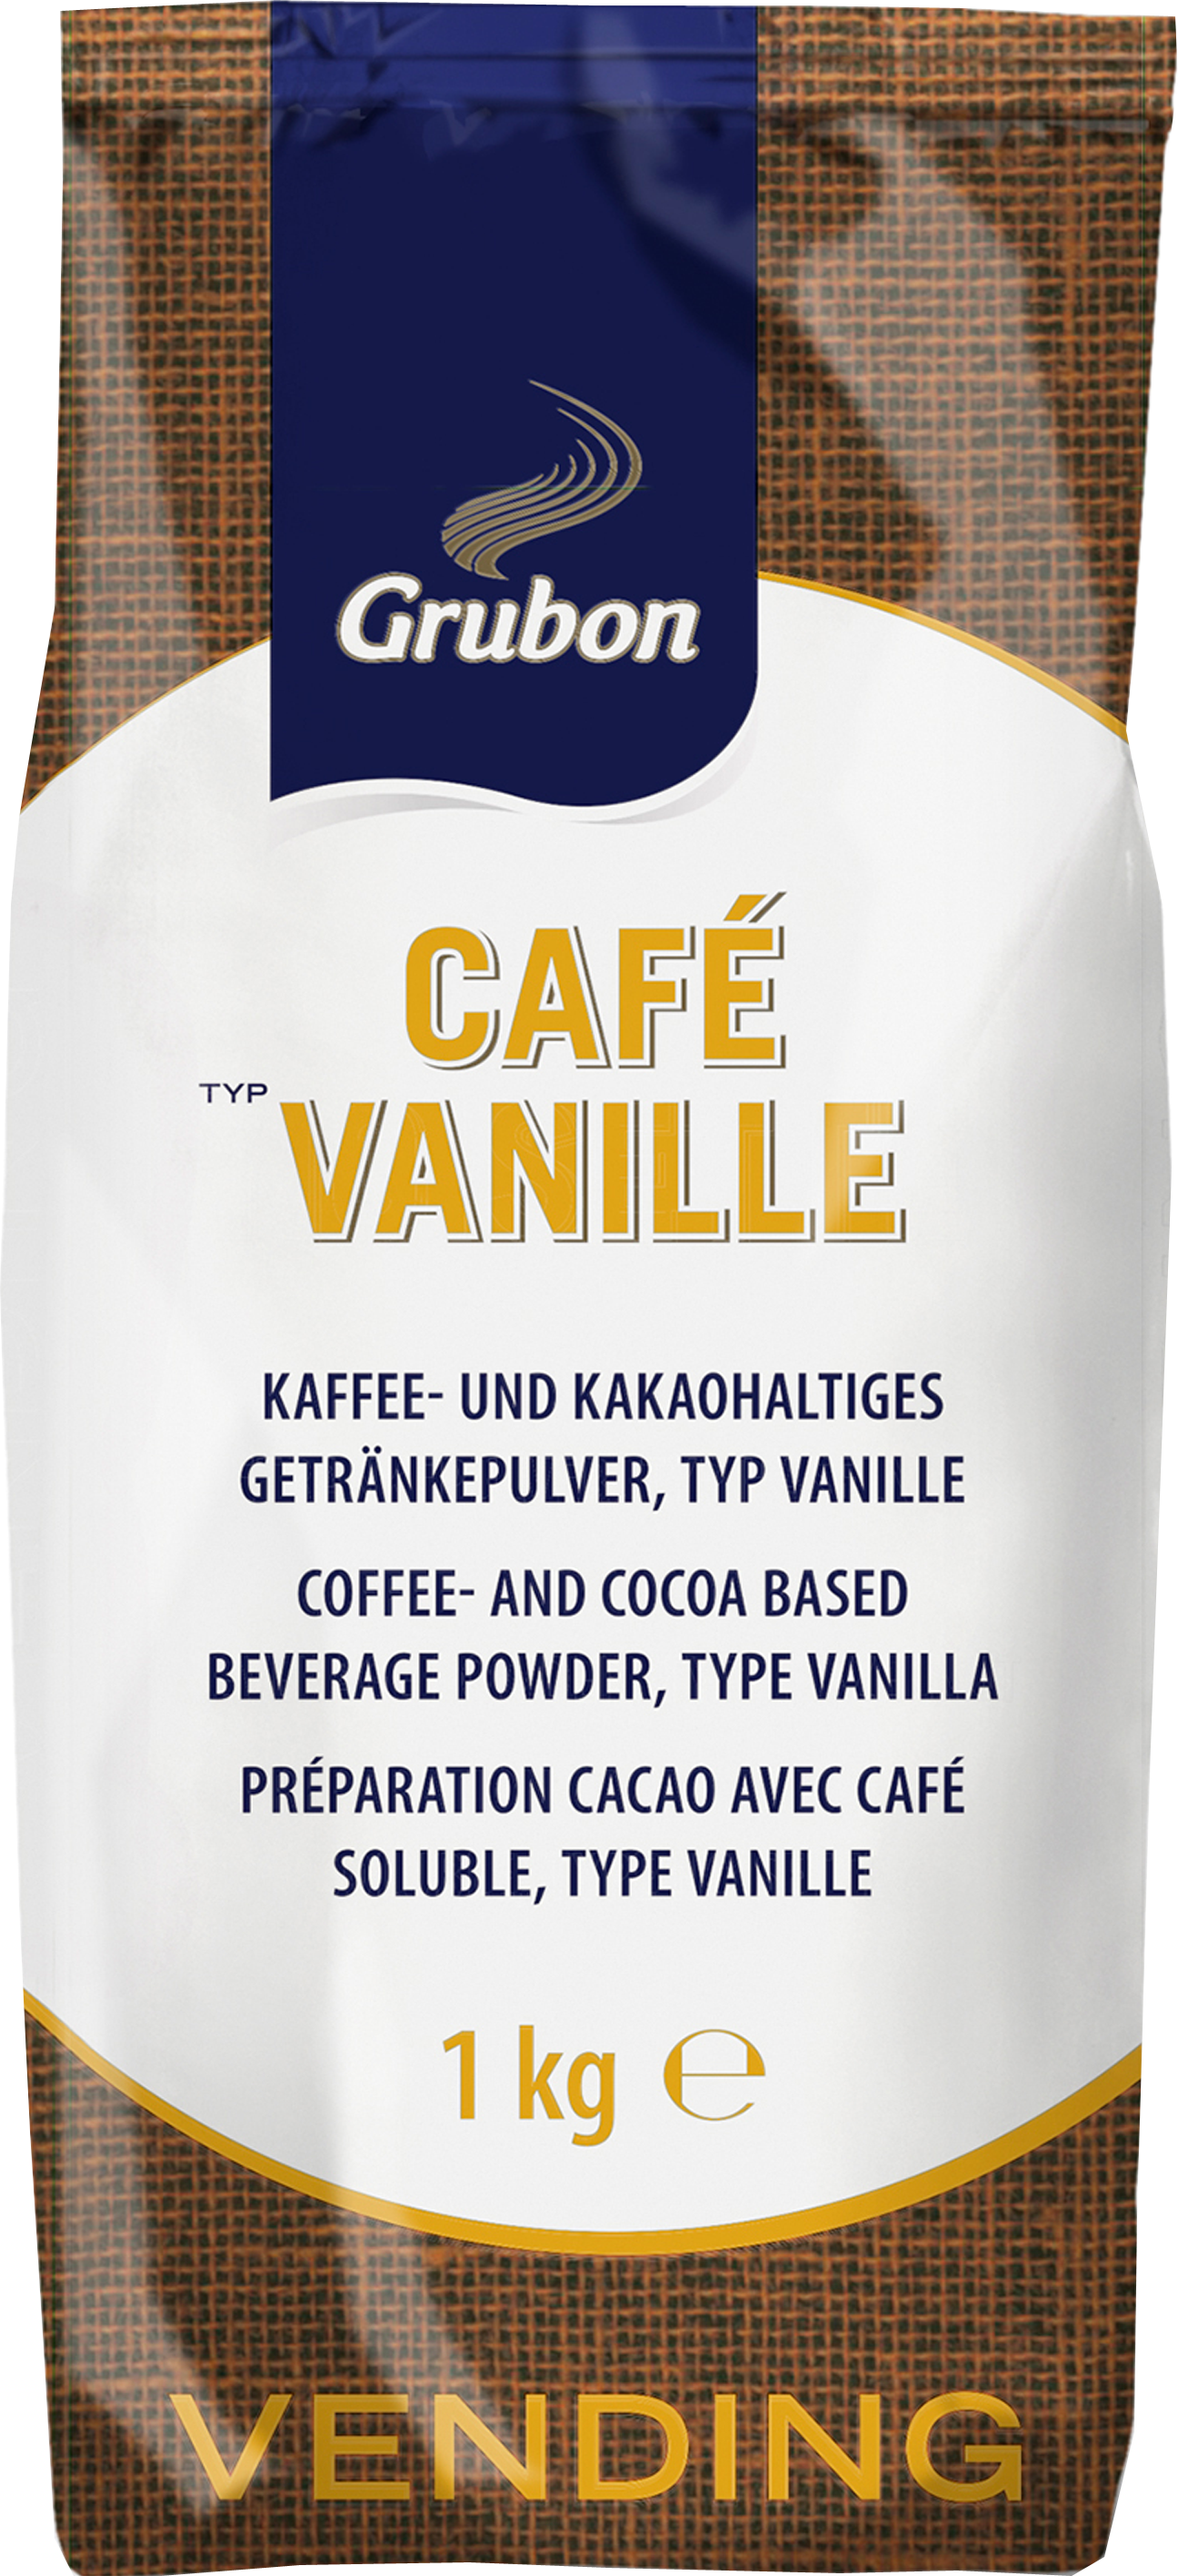 Grubon Vendingline Café Vanille